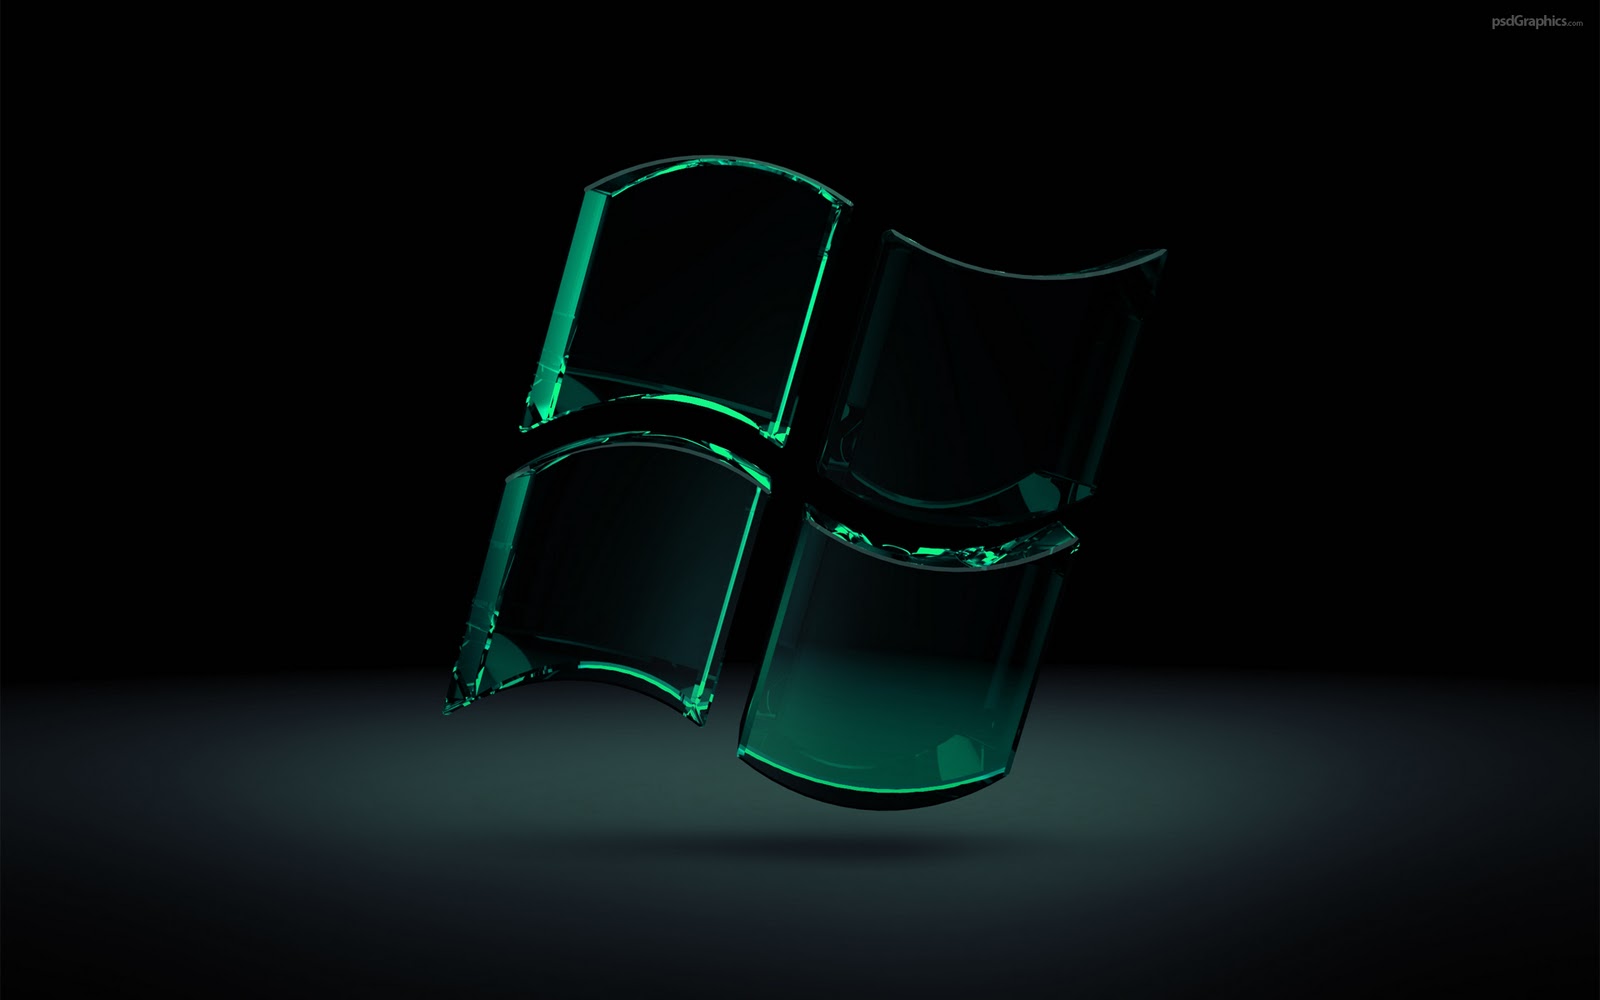 برنامج wallpapers,green,light,chair,transparent material,still life photography